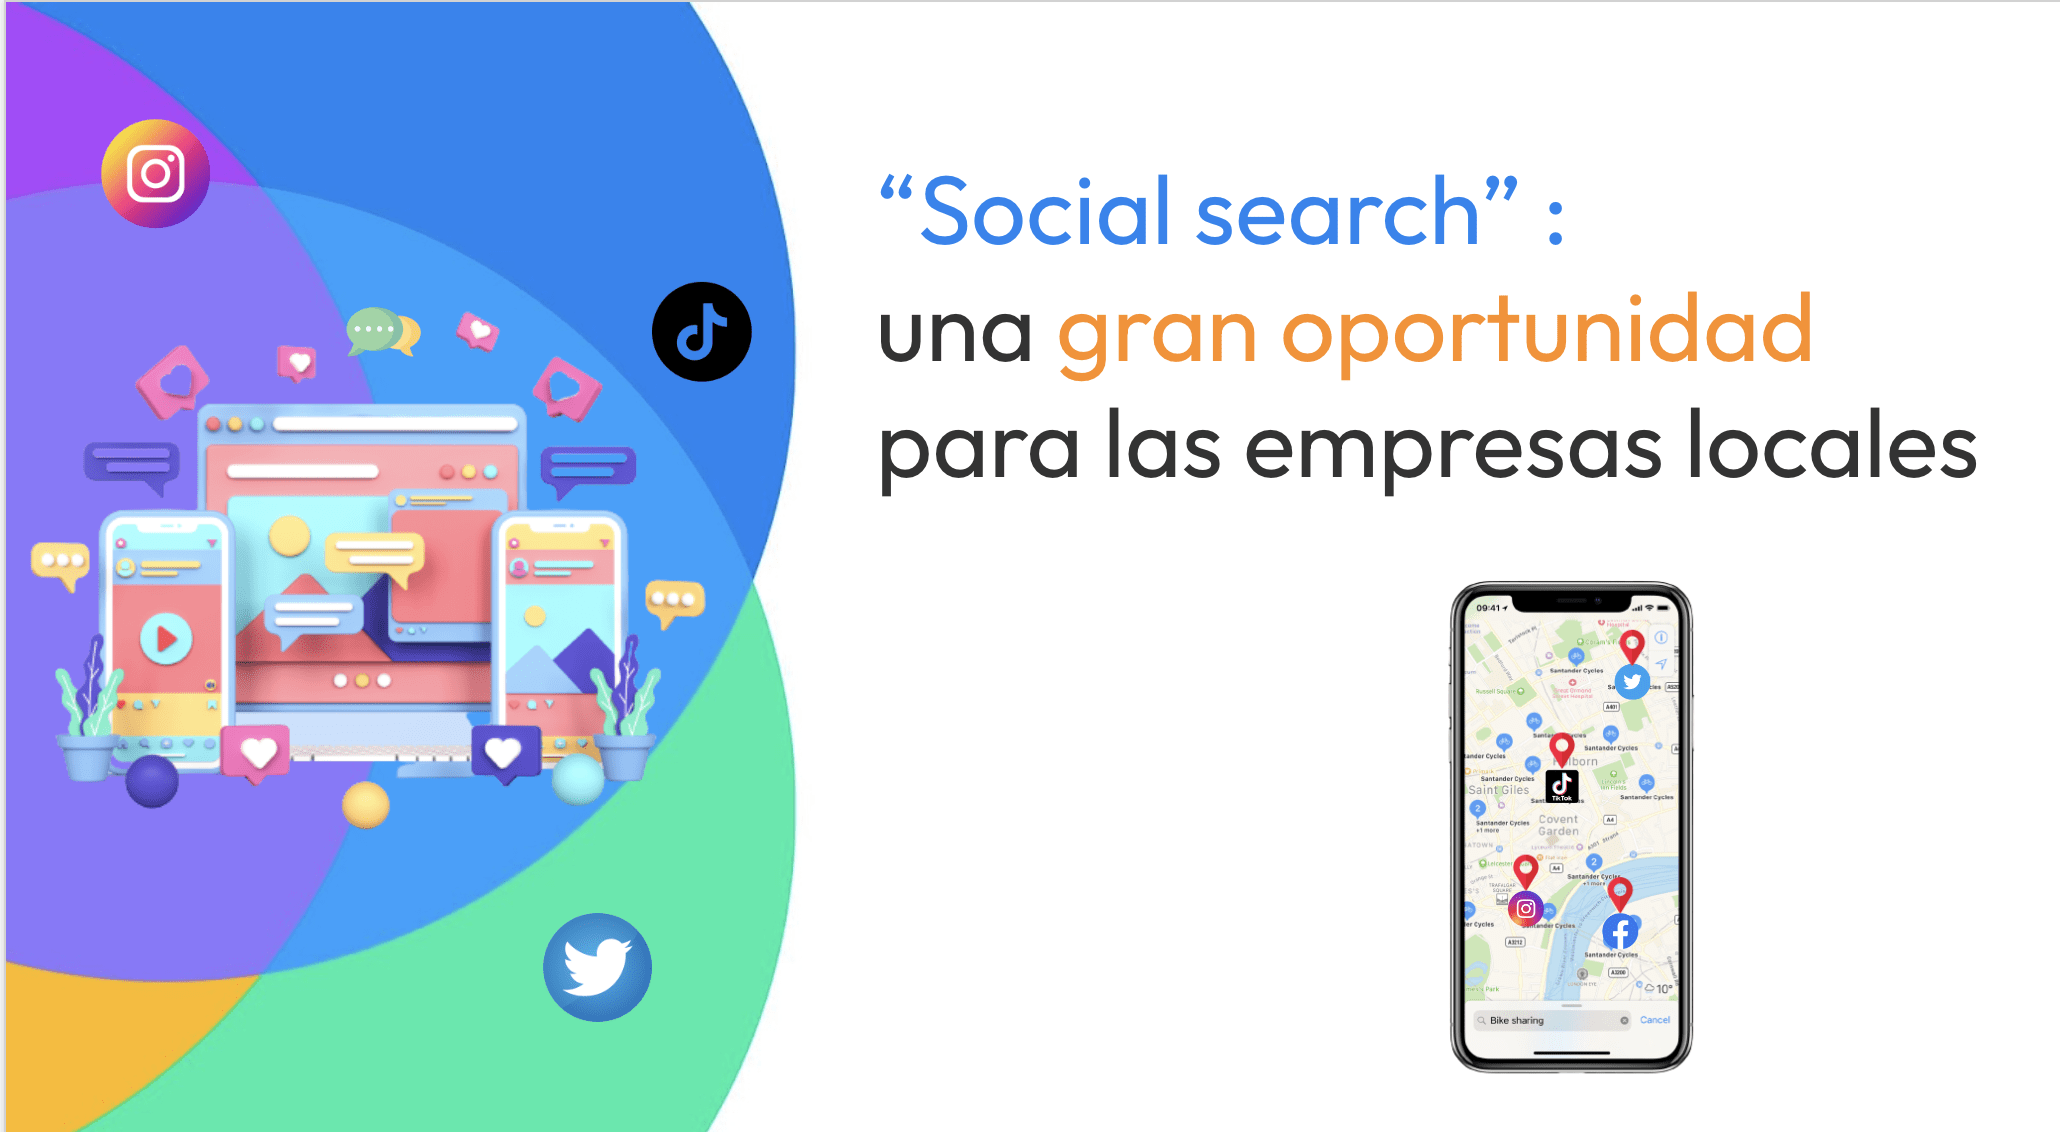 social search es une gran oportunidas par las empresas locales